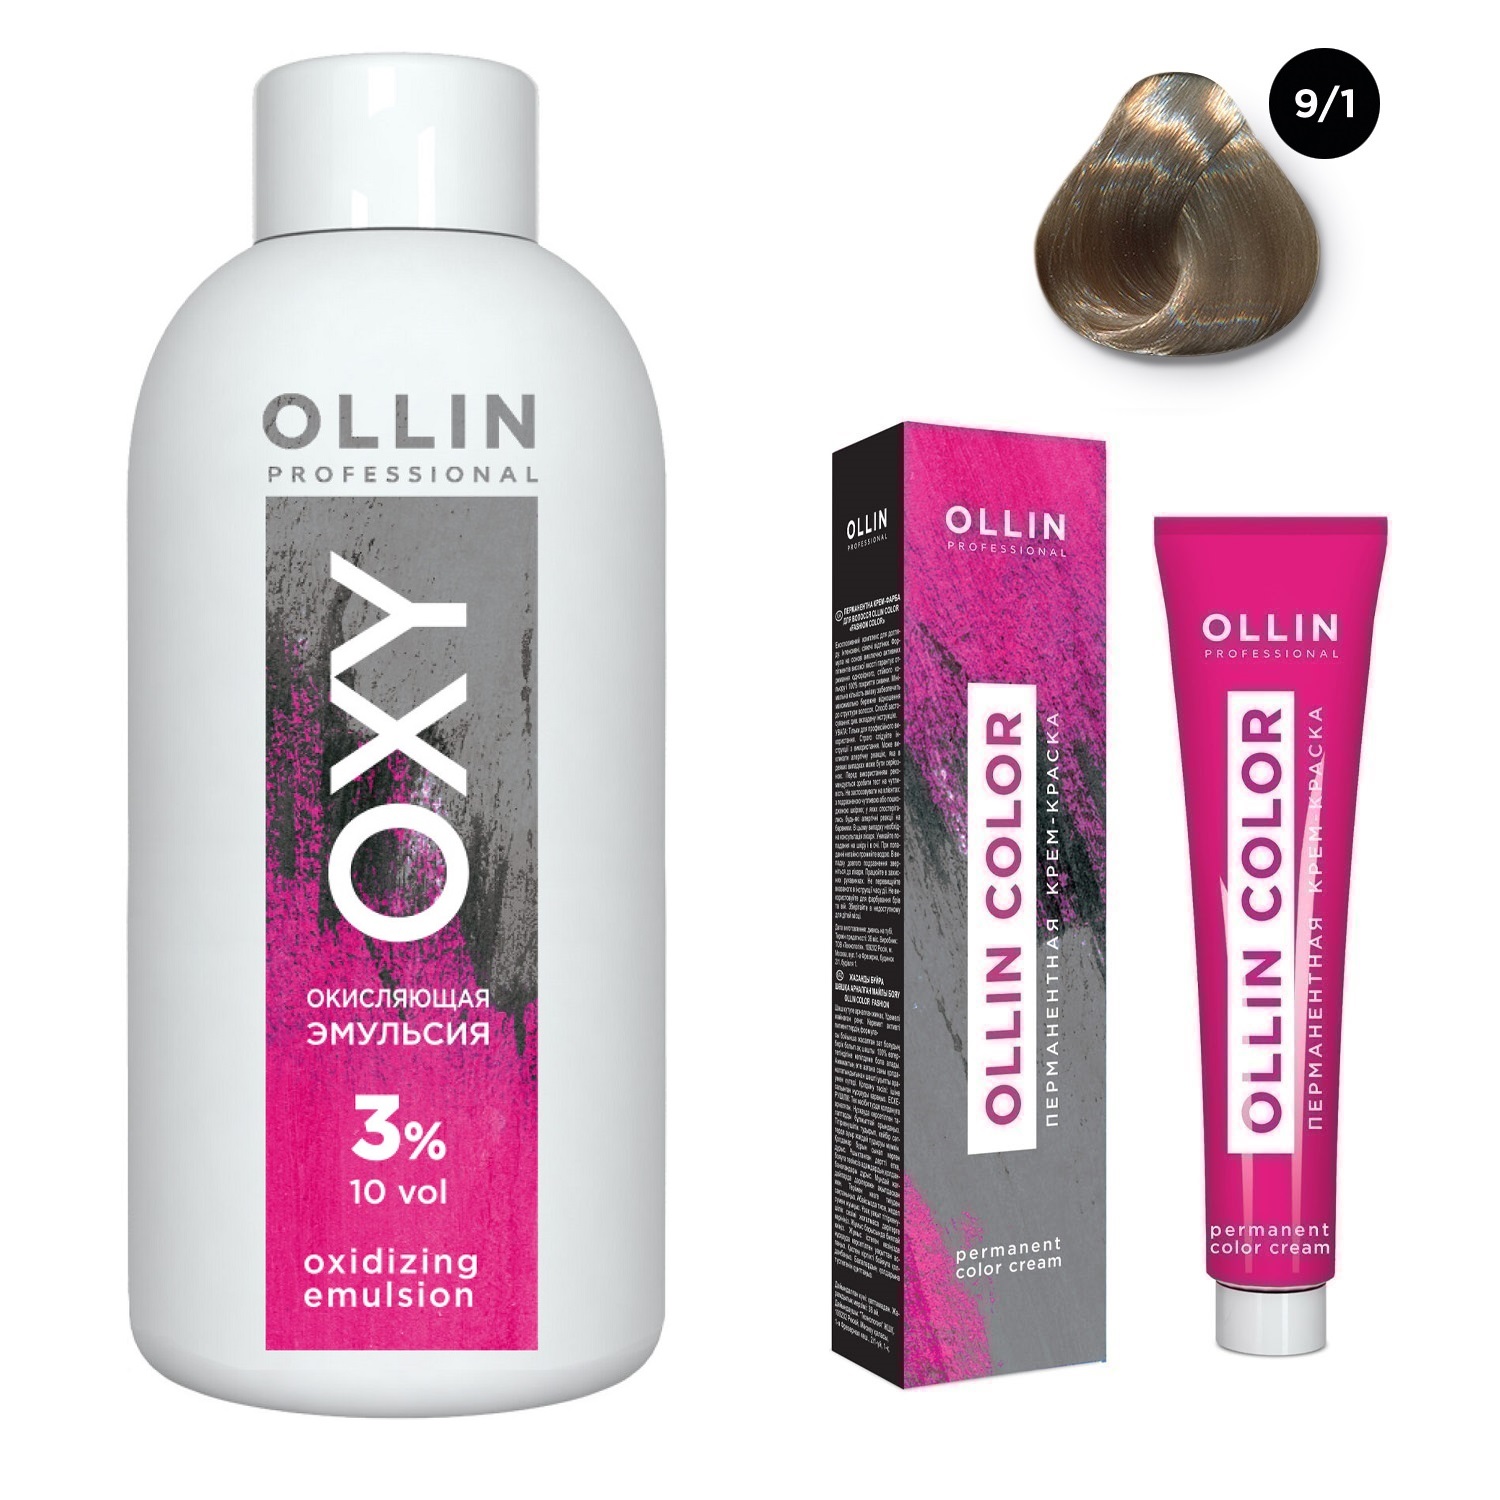 Ollin Professional Набор Перманентная крем-краска для волос Ollin Color оттенок 9/1 блондин пепельный 100 мл + Окисляющая эмульсия Oxy 3% 150 мл (Ollin Professional, Ollin Color) окисляющая эмульсия oxy 9% 1000 мл